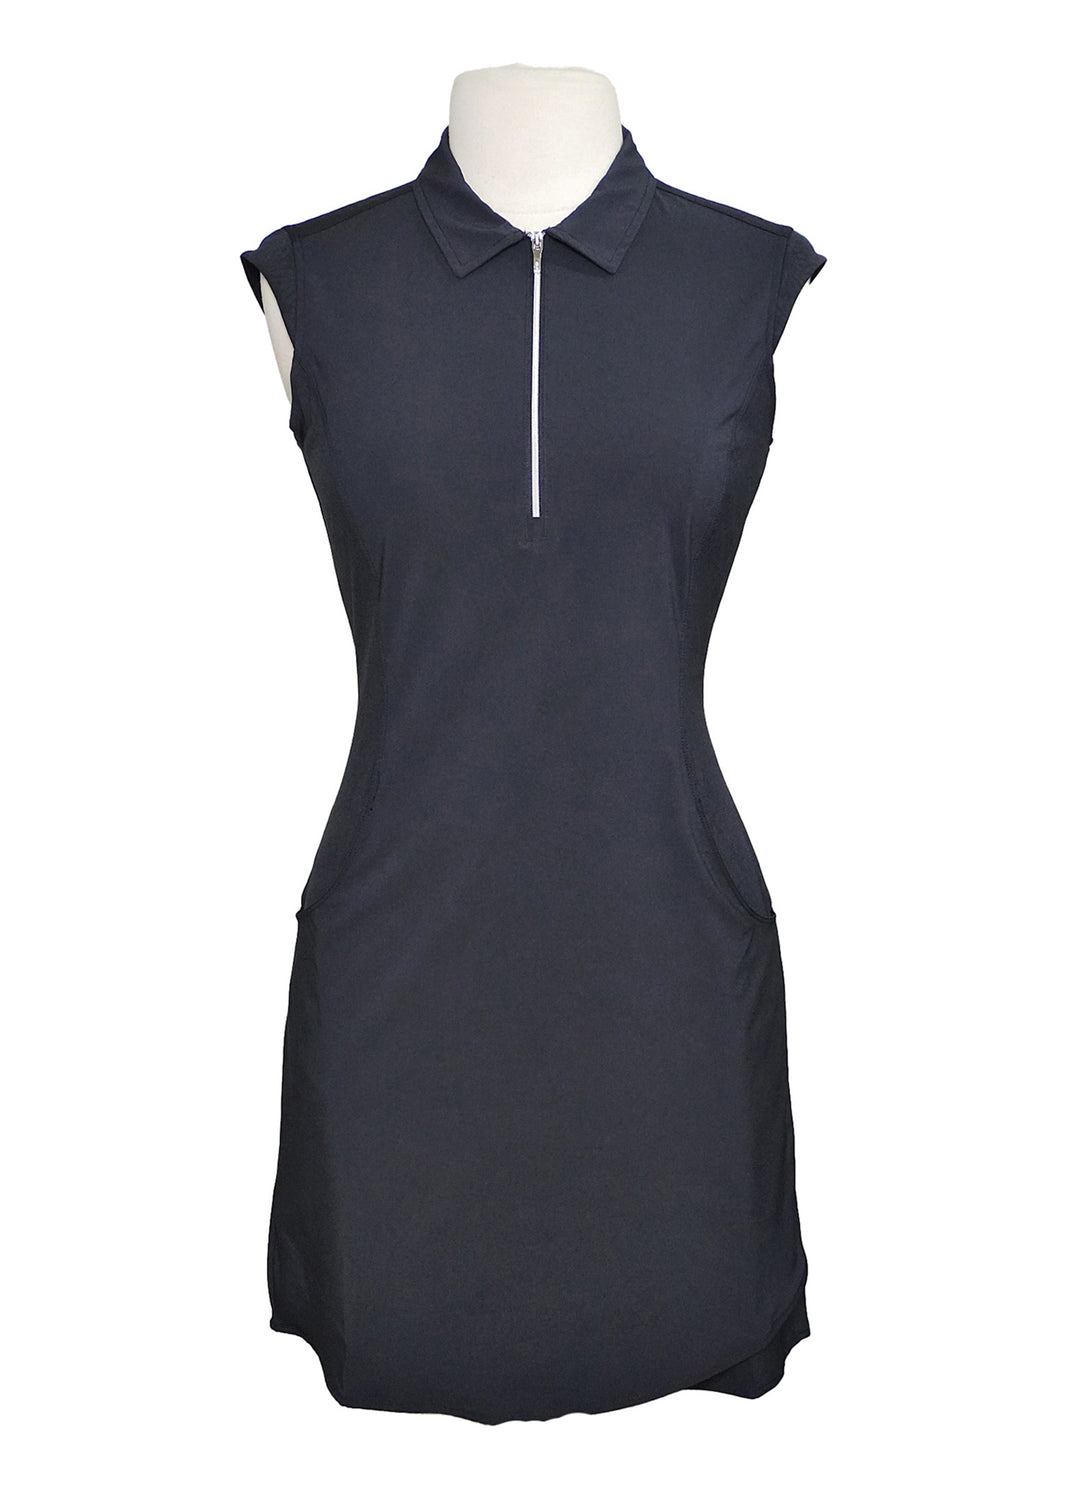 NVO Sport Emilia Dress - Navy - Size Small - Skorzie